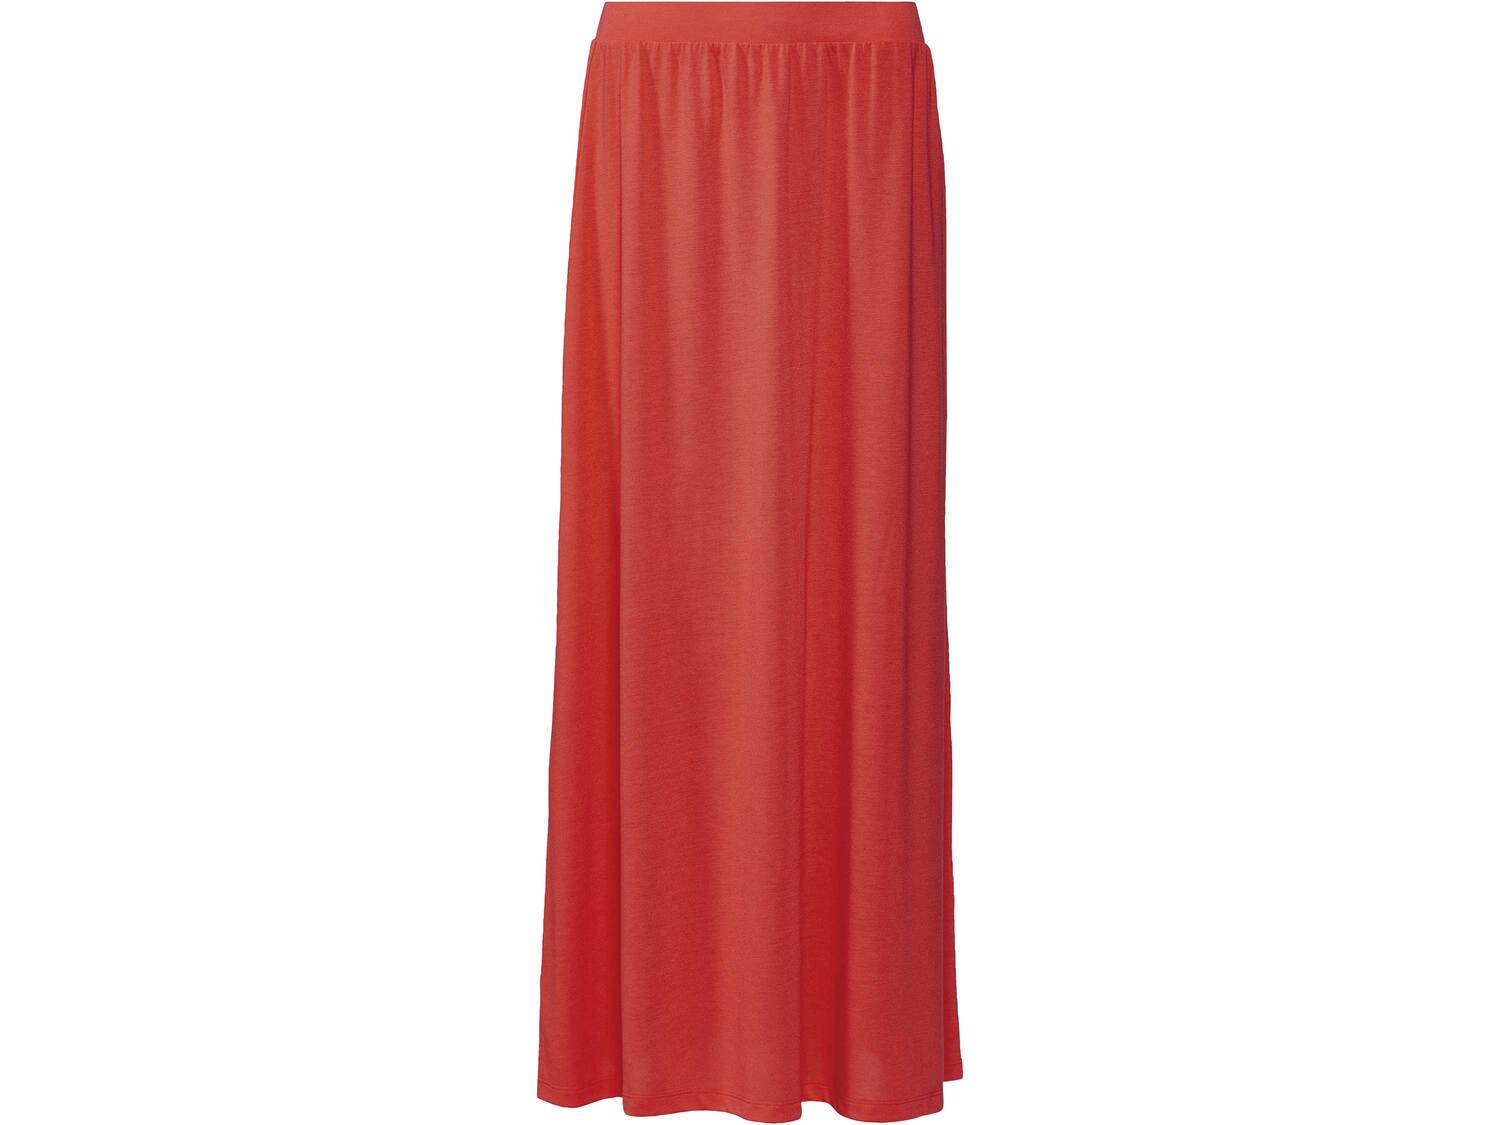 Spódnica damska z wiskozą Esmara, cena 29,99 PLN 
3 kolory 
- rozmiary: XS-L*
- ...